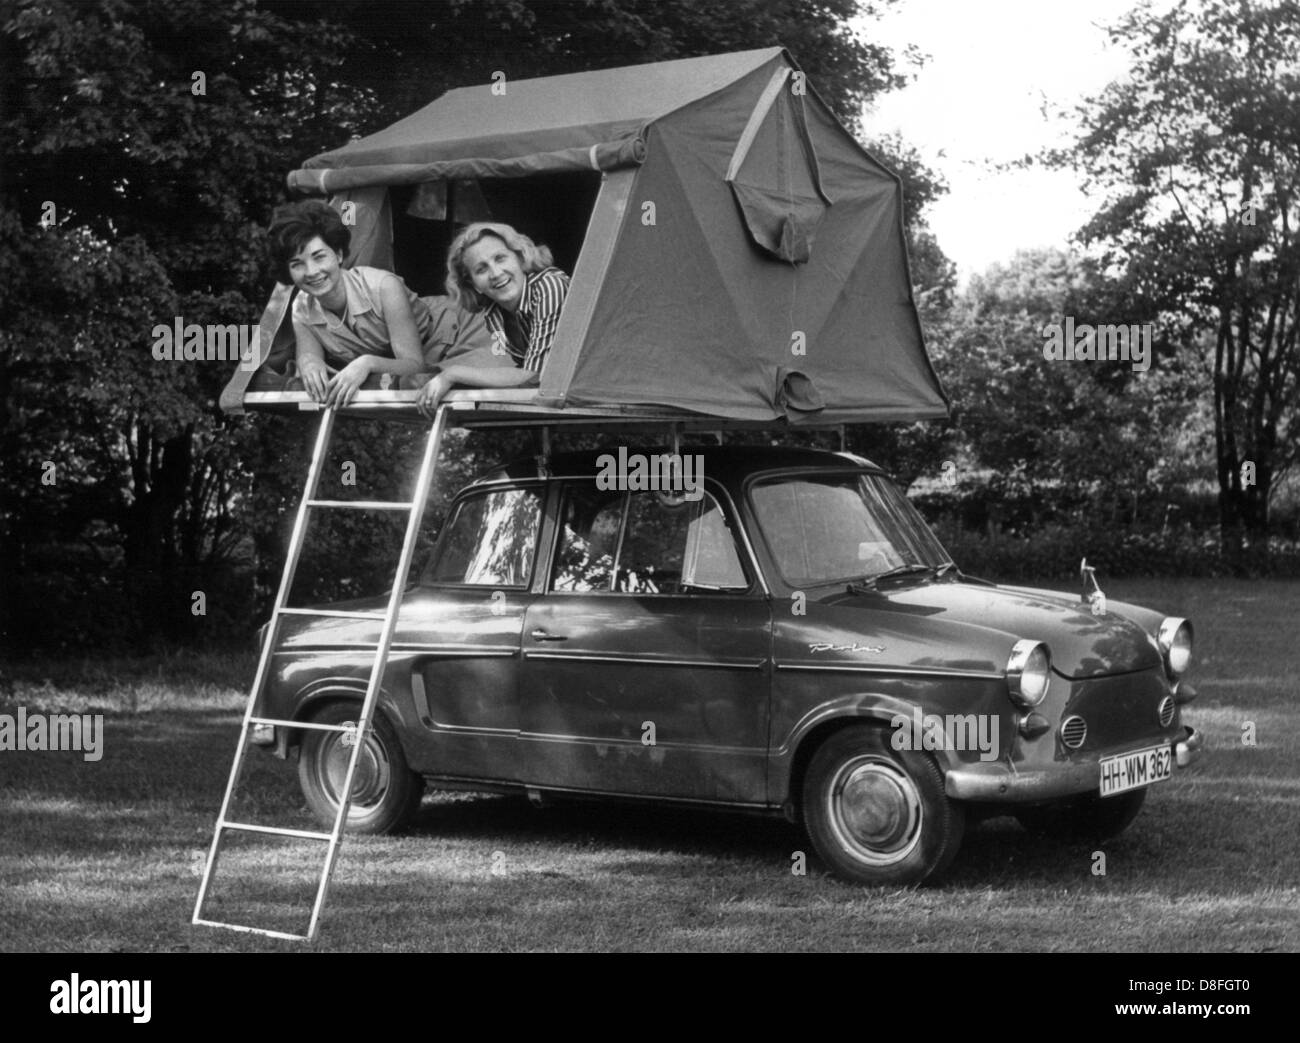 Deux jeunes femmes se trouvent dans leur tente de camping qui est fixé sur le toit du véhicule d'une NSU Prinz. Banque D'Images